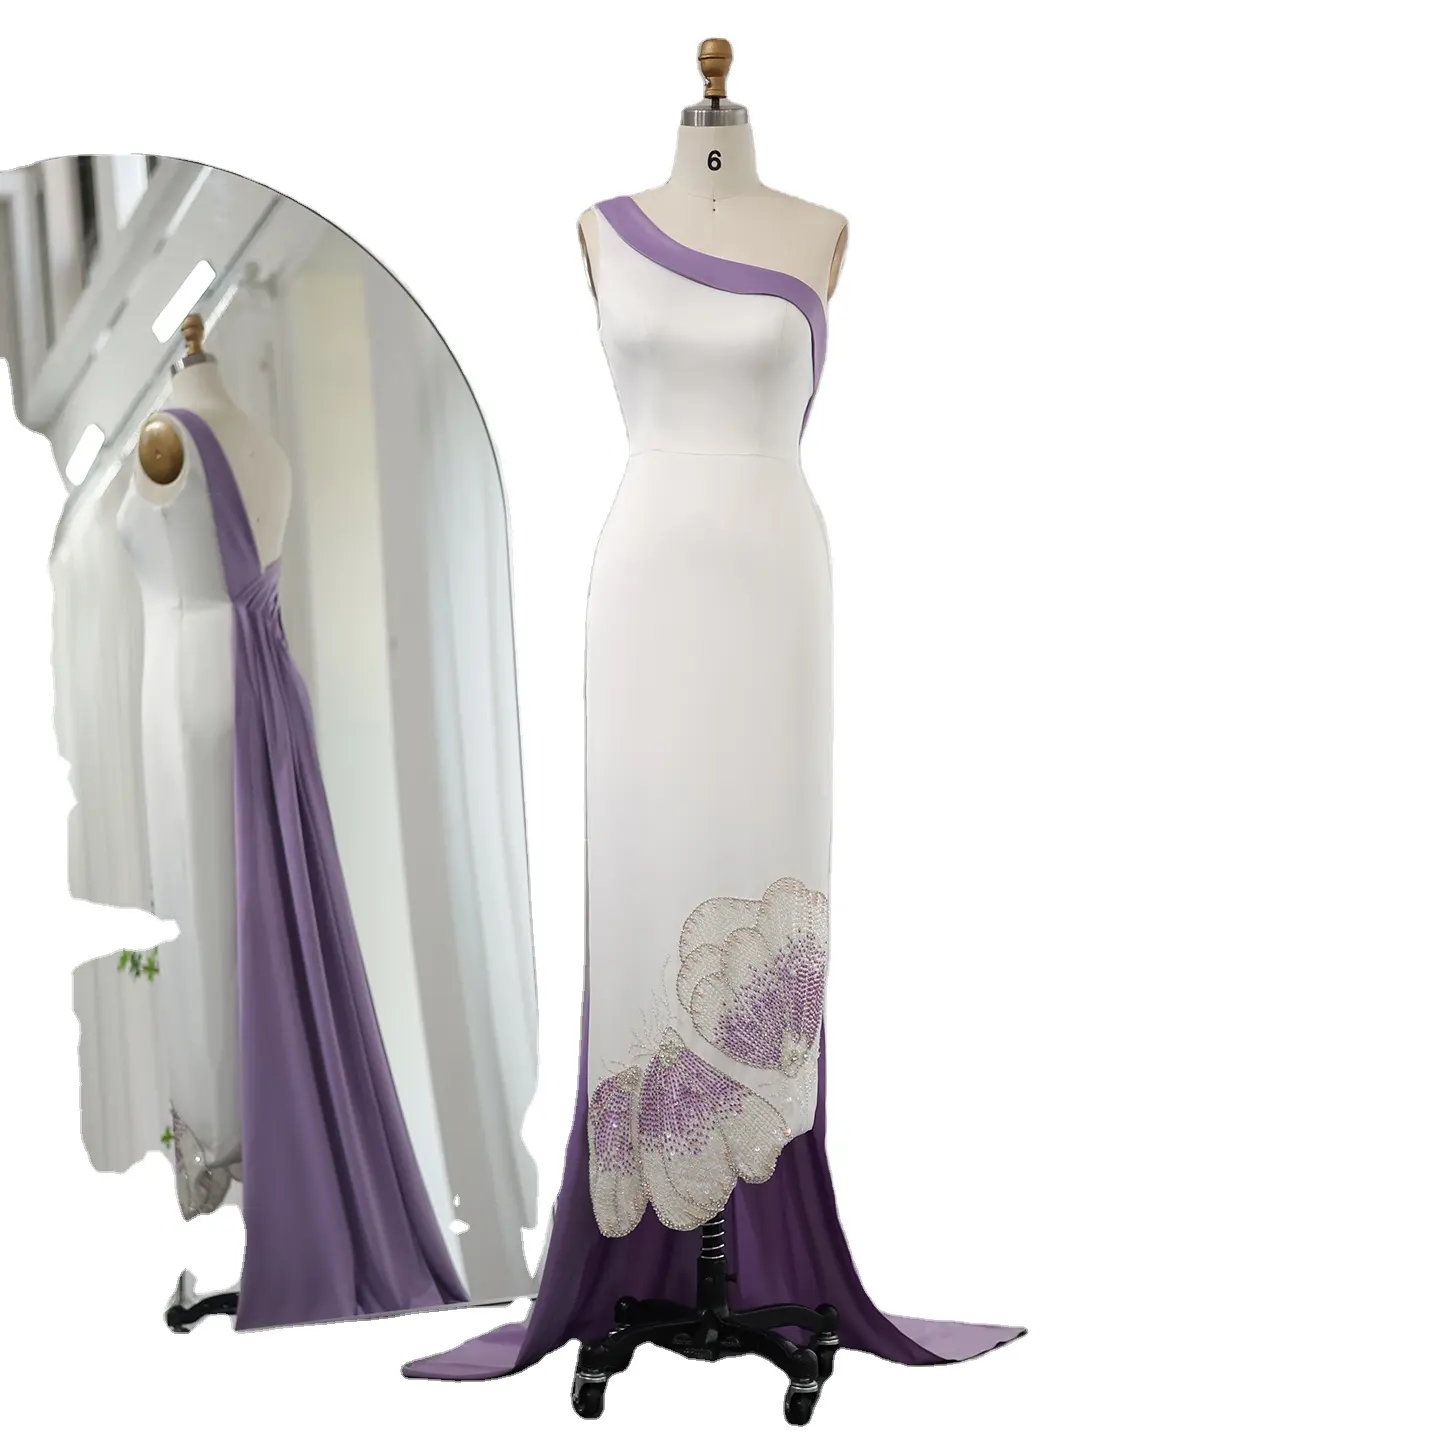 Sharon Said SS475 Dubai Blanc Lilas Une Épaule Robes De Soirée De Luxe Pour Les Femmes De Mariage